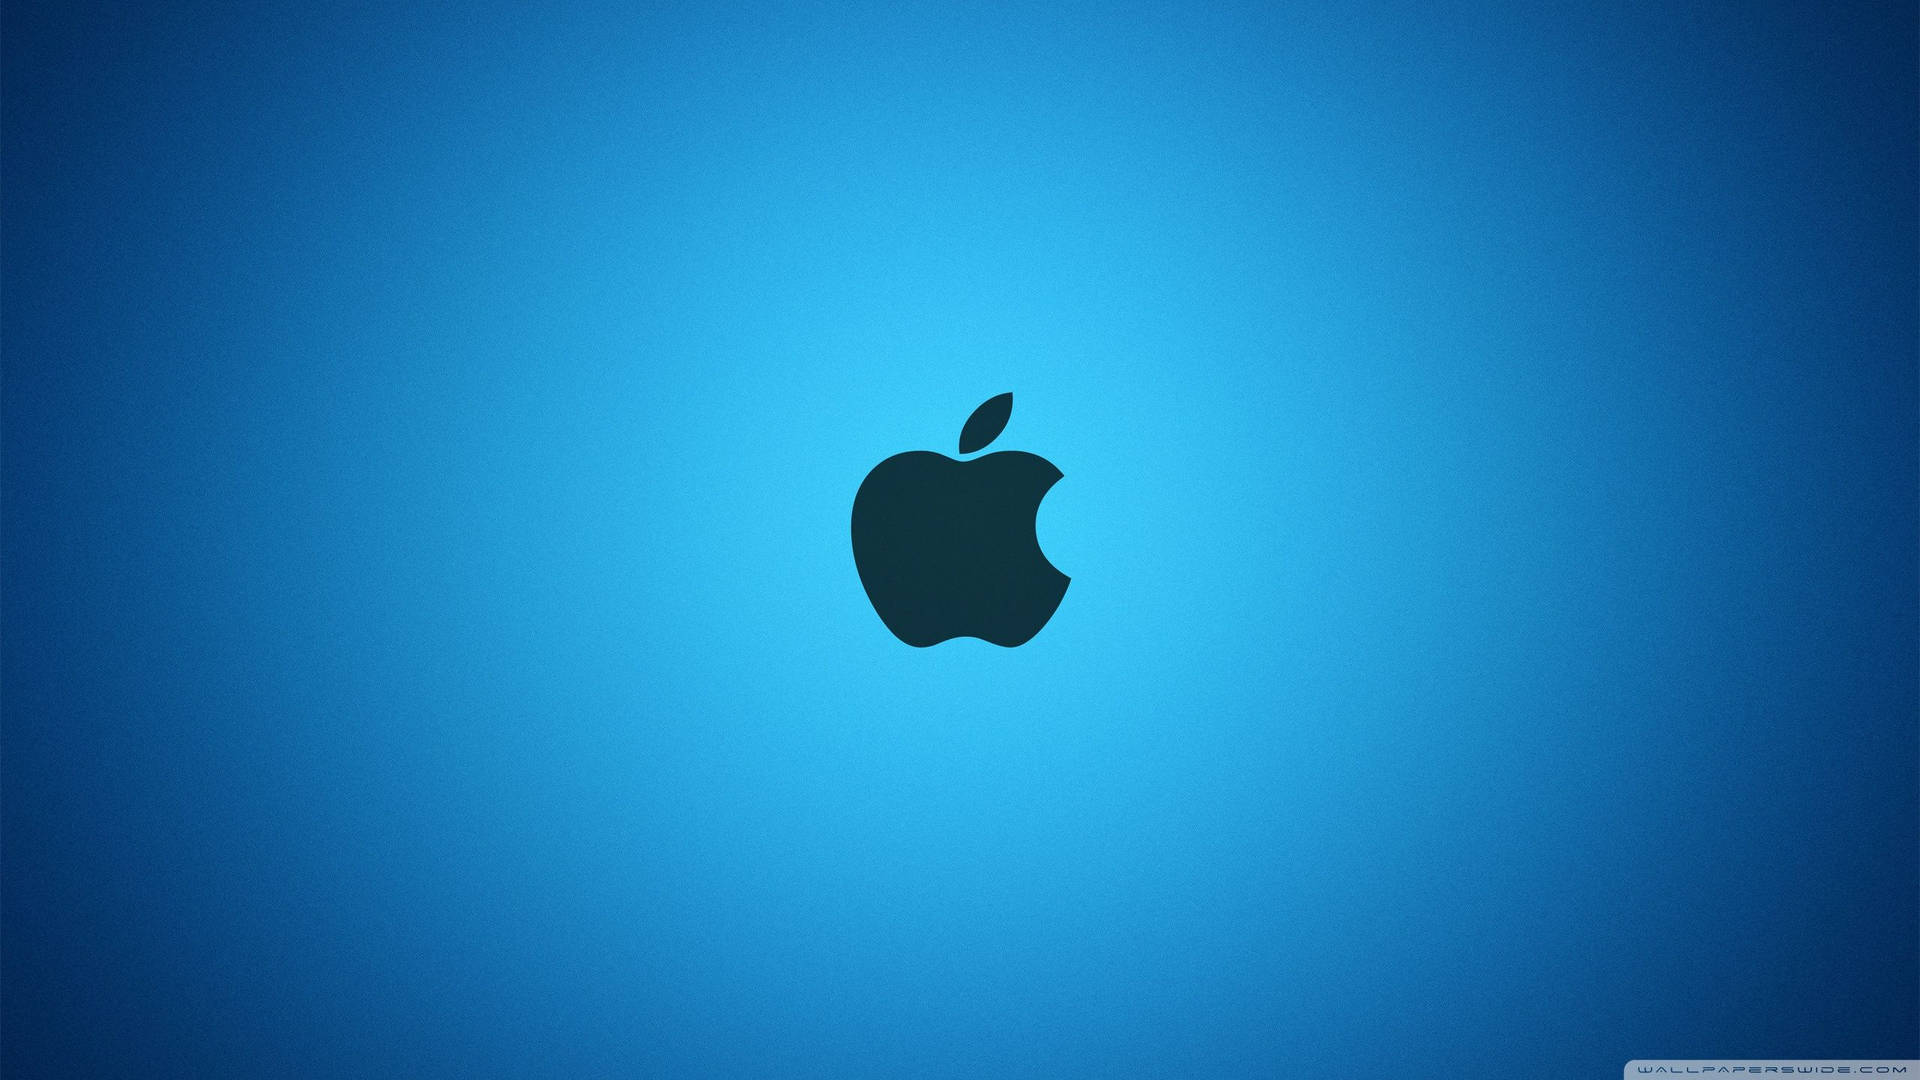 Dark Apple Logo On Bright Blue Background